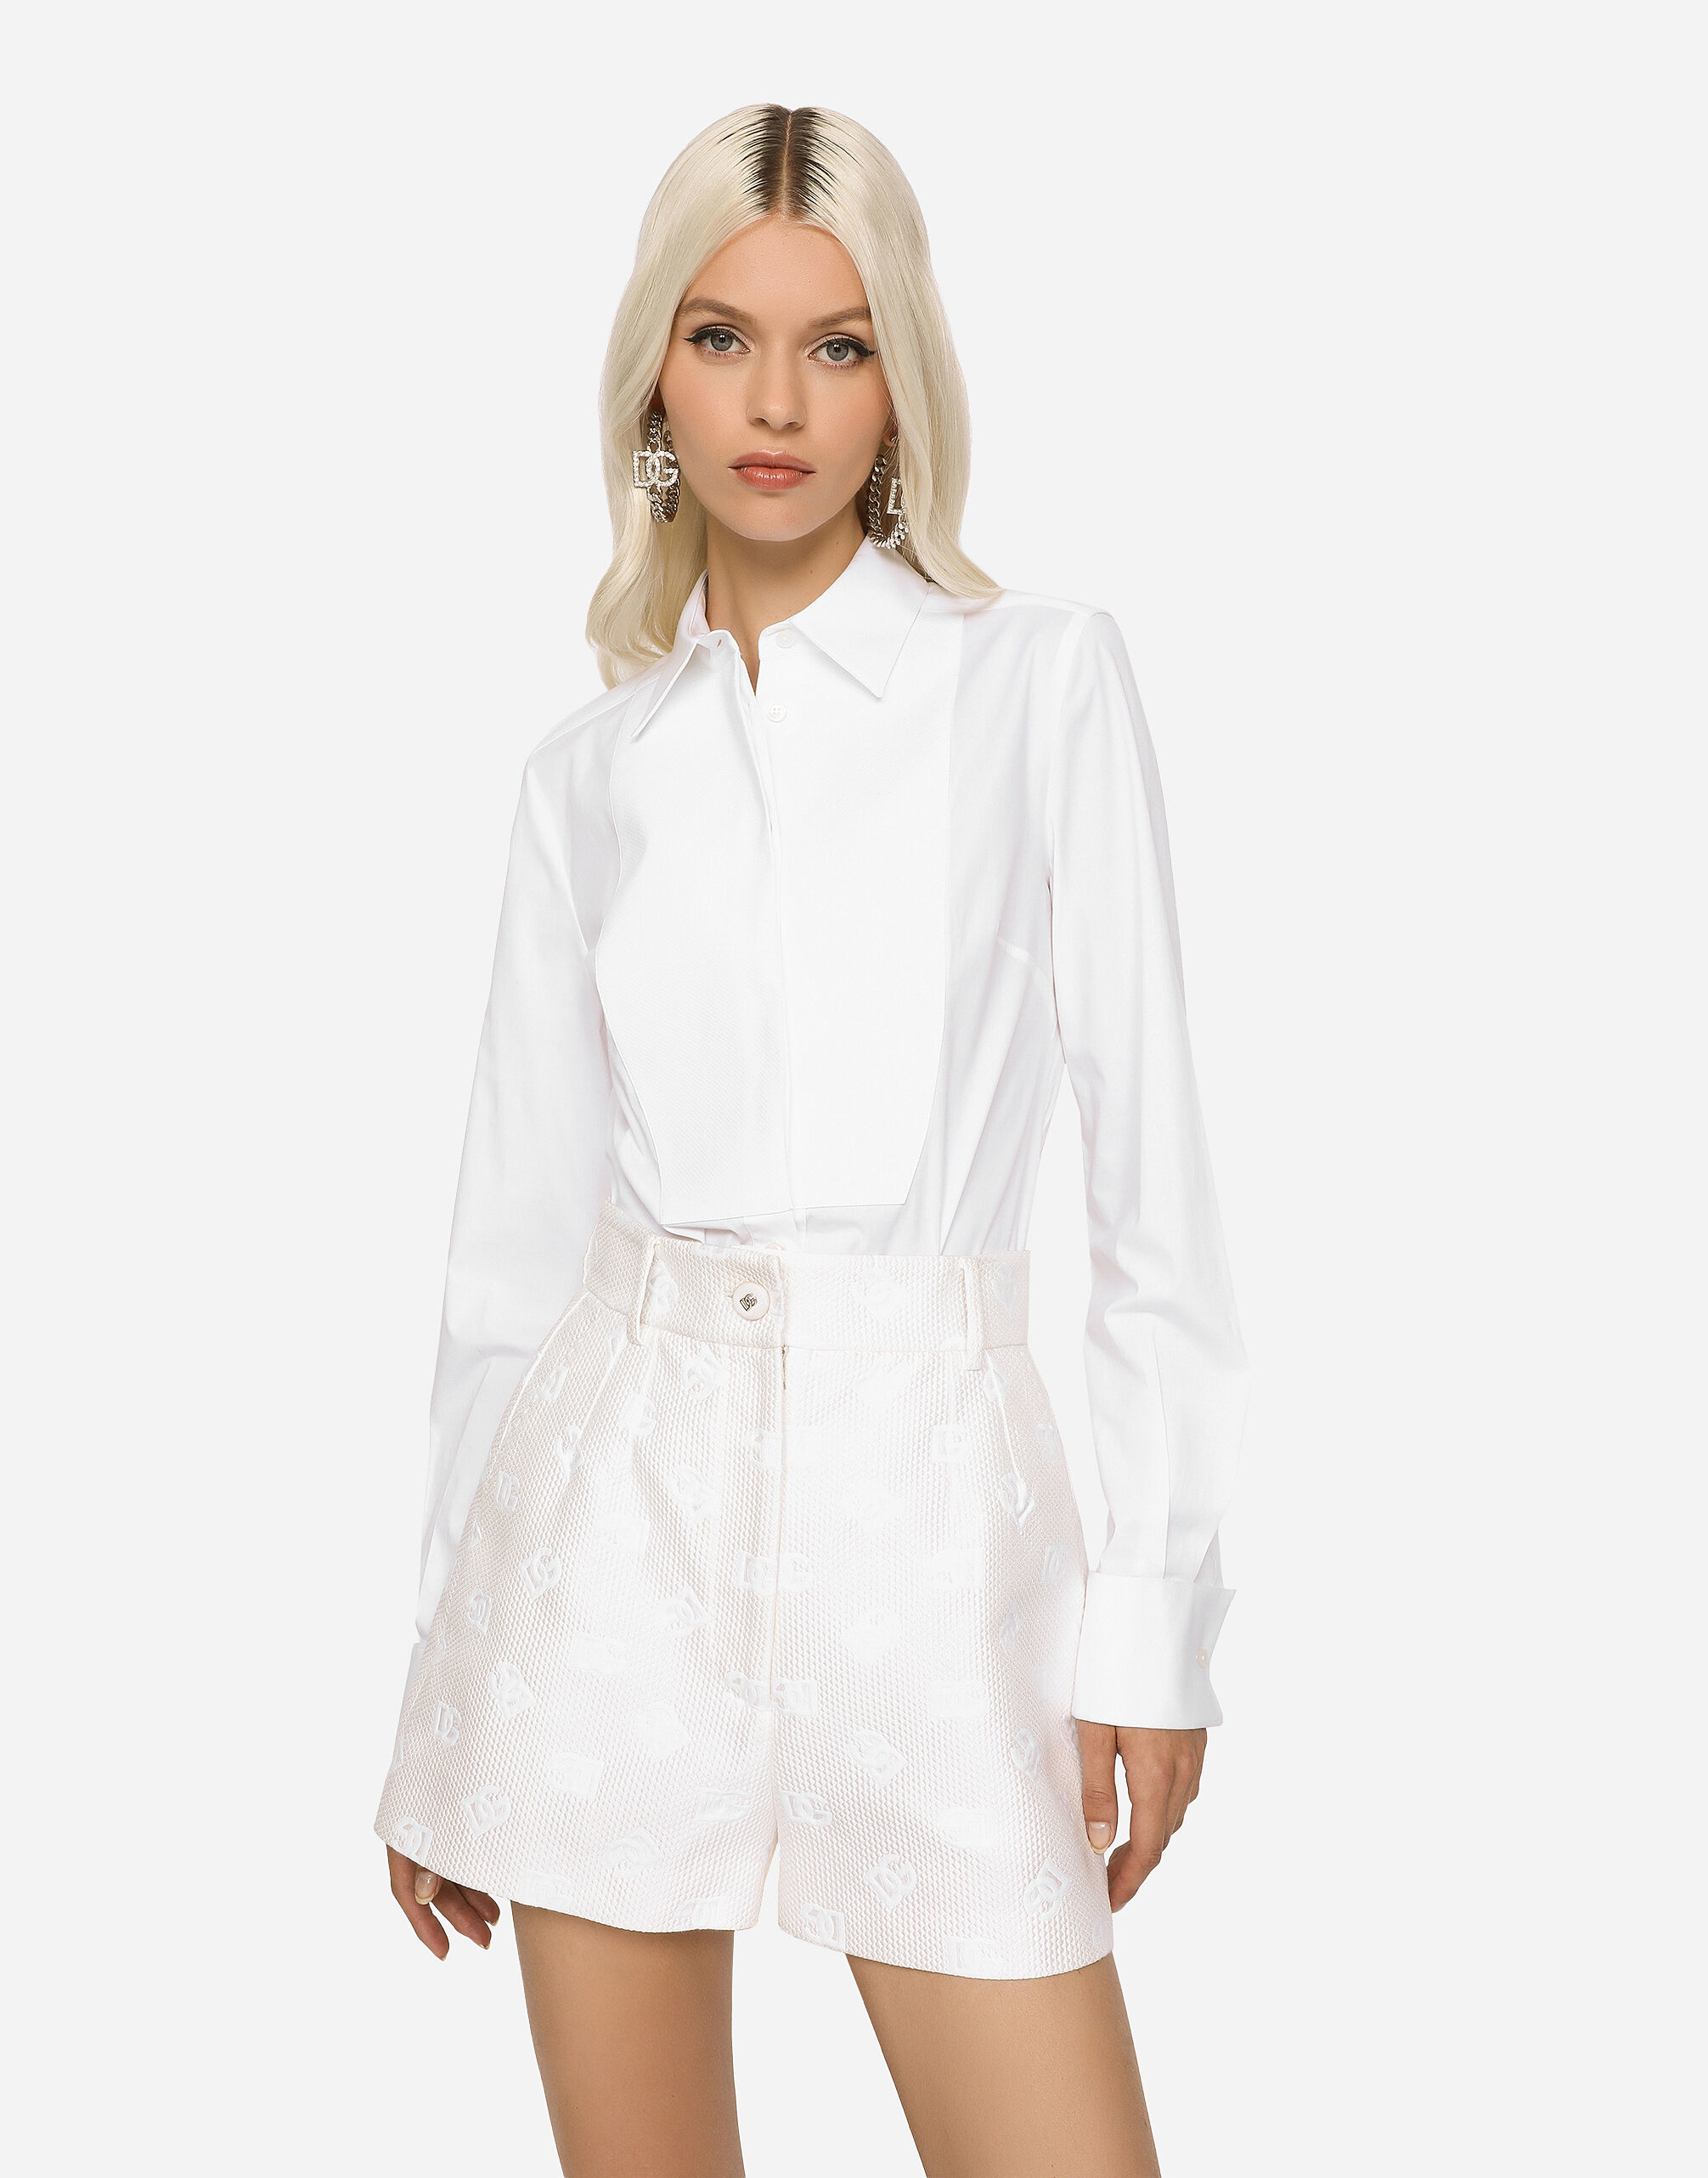 Camisa blanca, de Dolce Gabbana (650 euros).